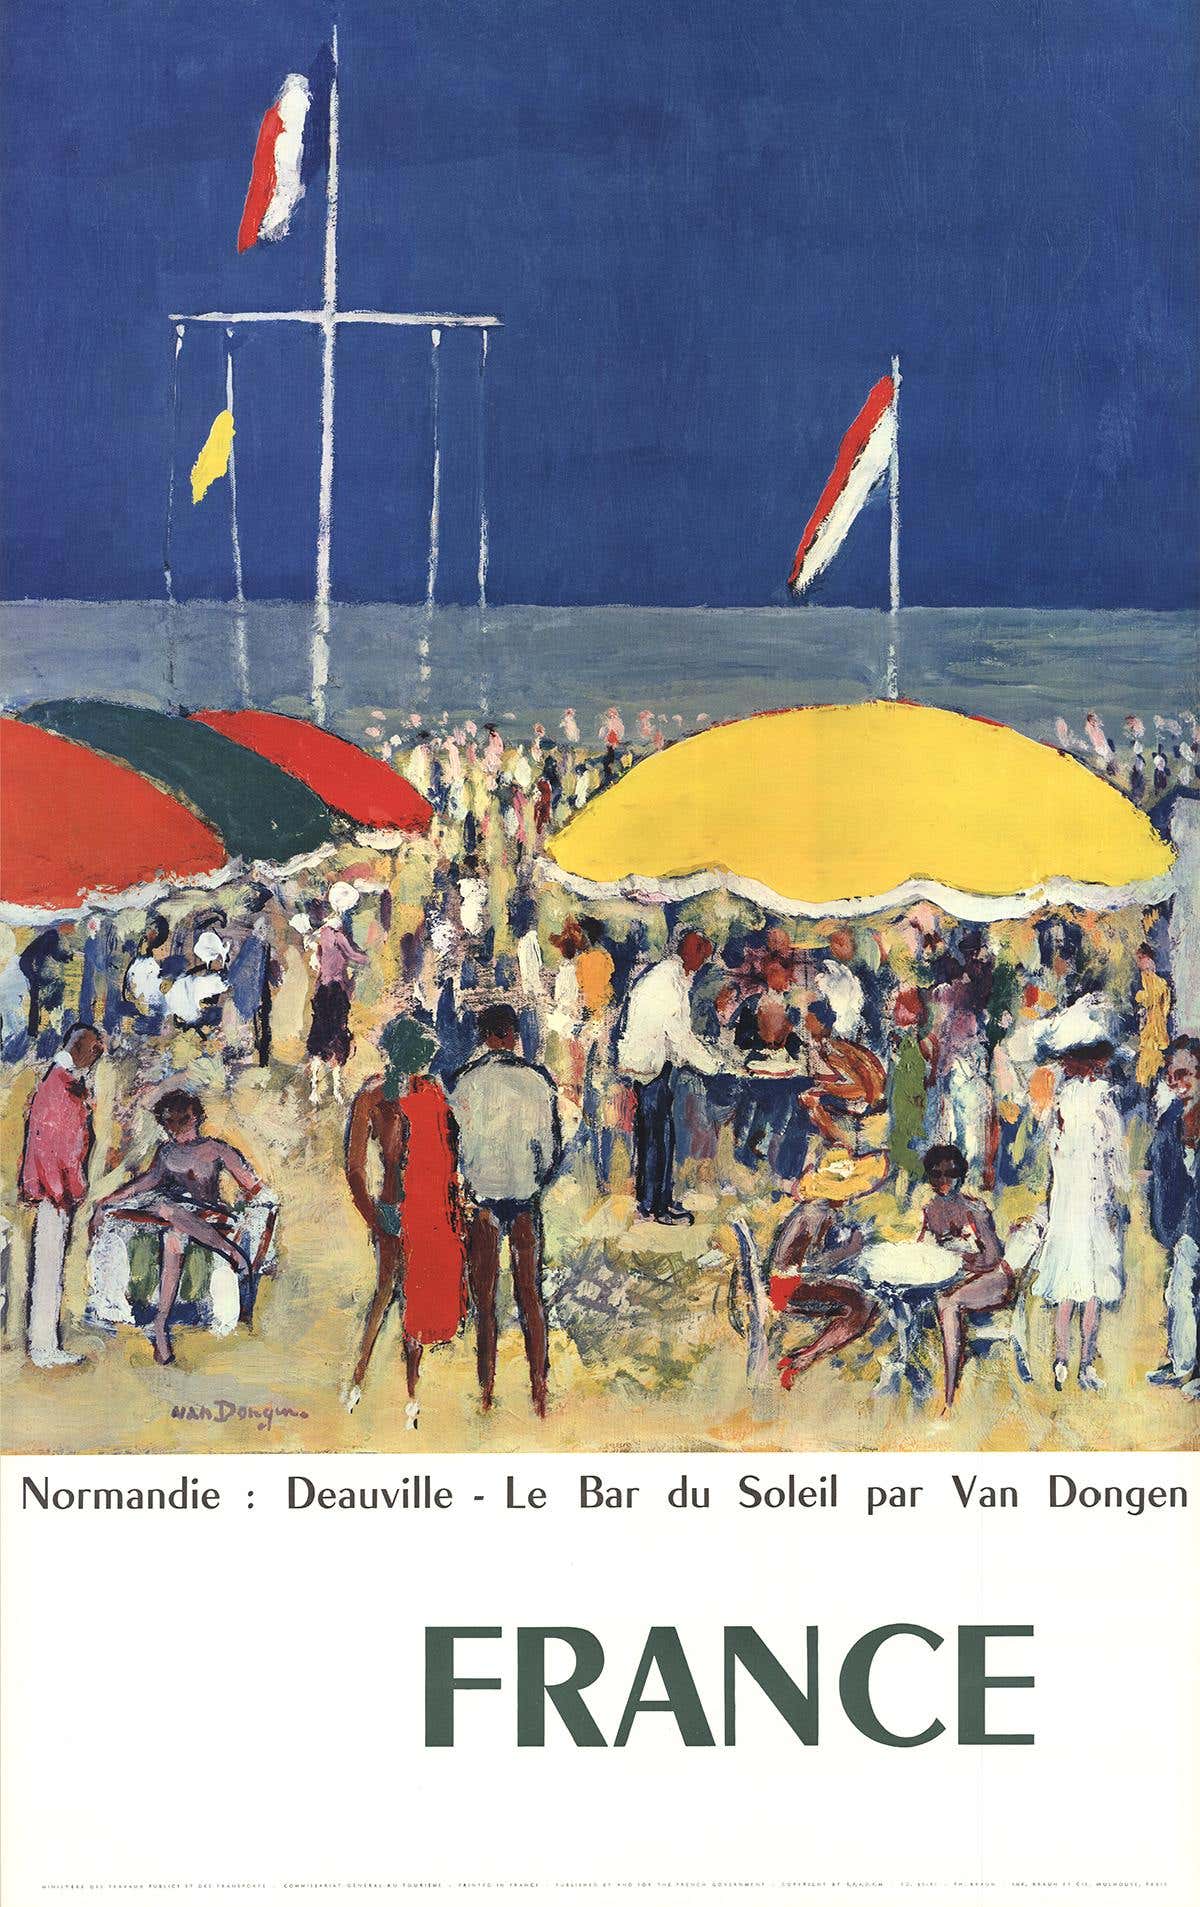 Nach Kees van Dongen-Normandie-Deauville, Le Bar du Soleil-Poster-